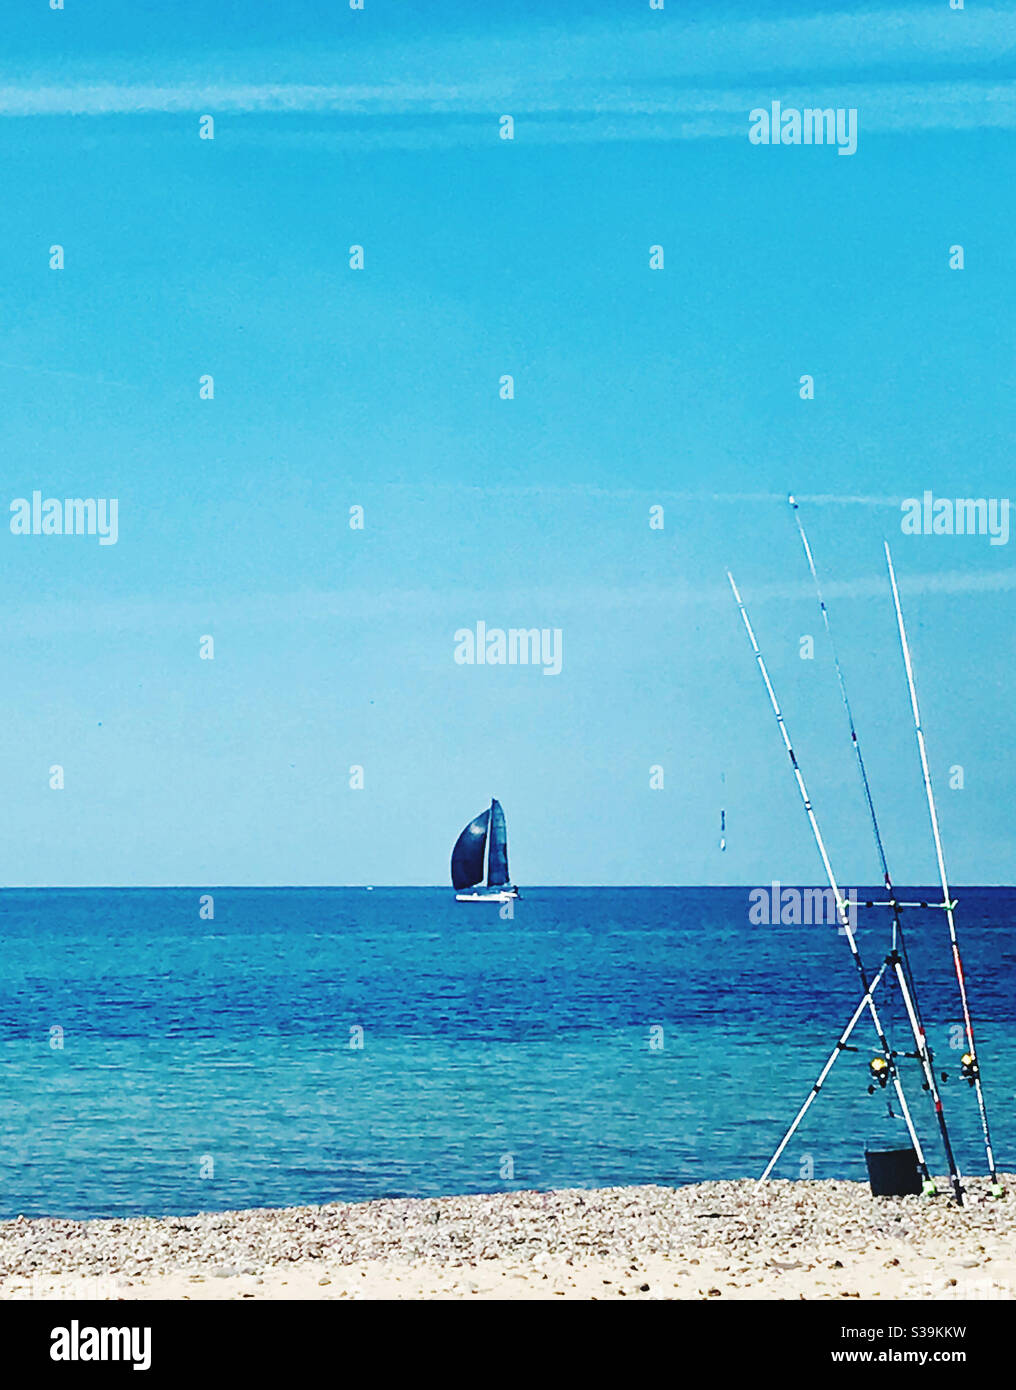 Le voilier bleu à la mer Baltique Banque D'Images